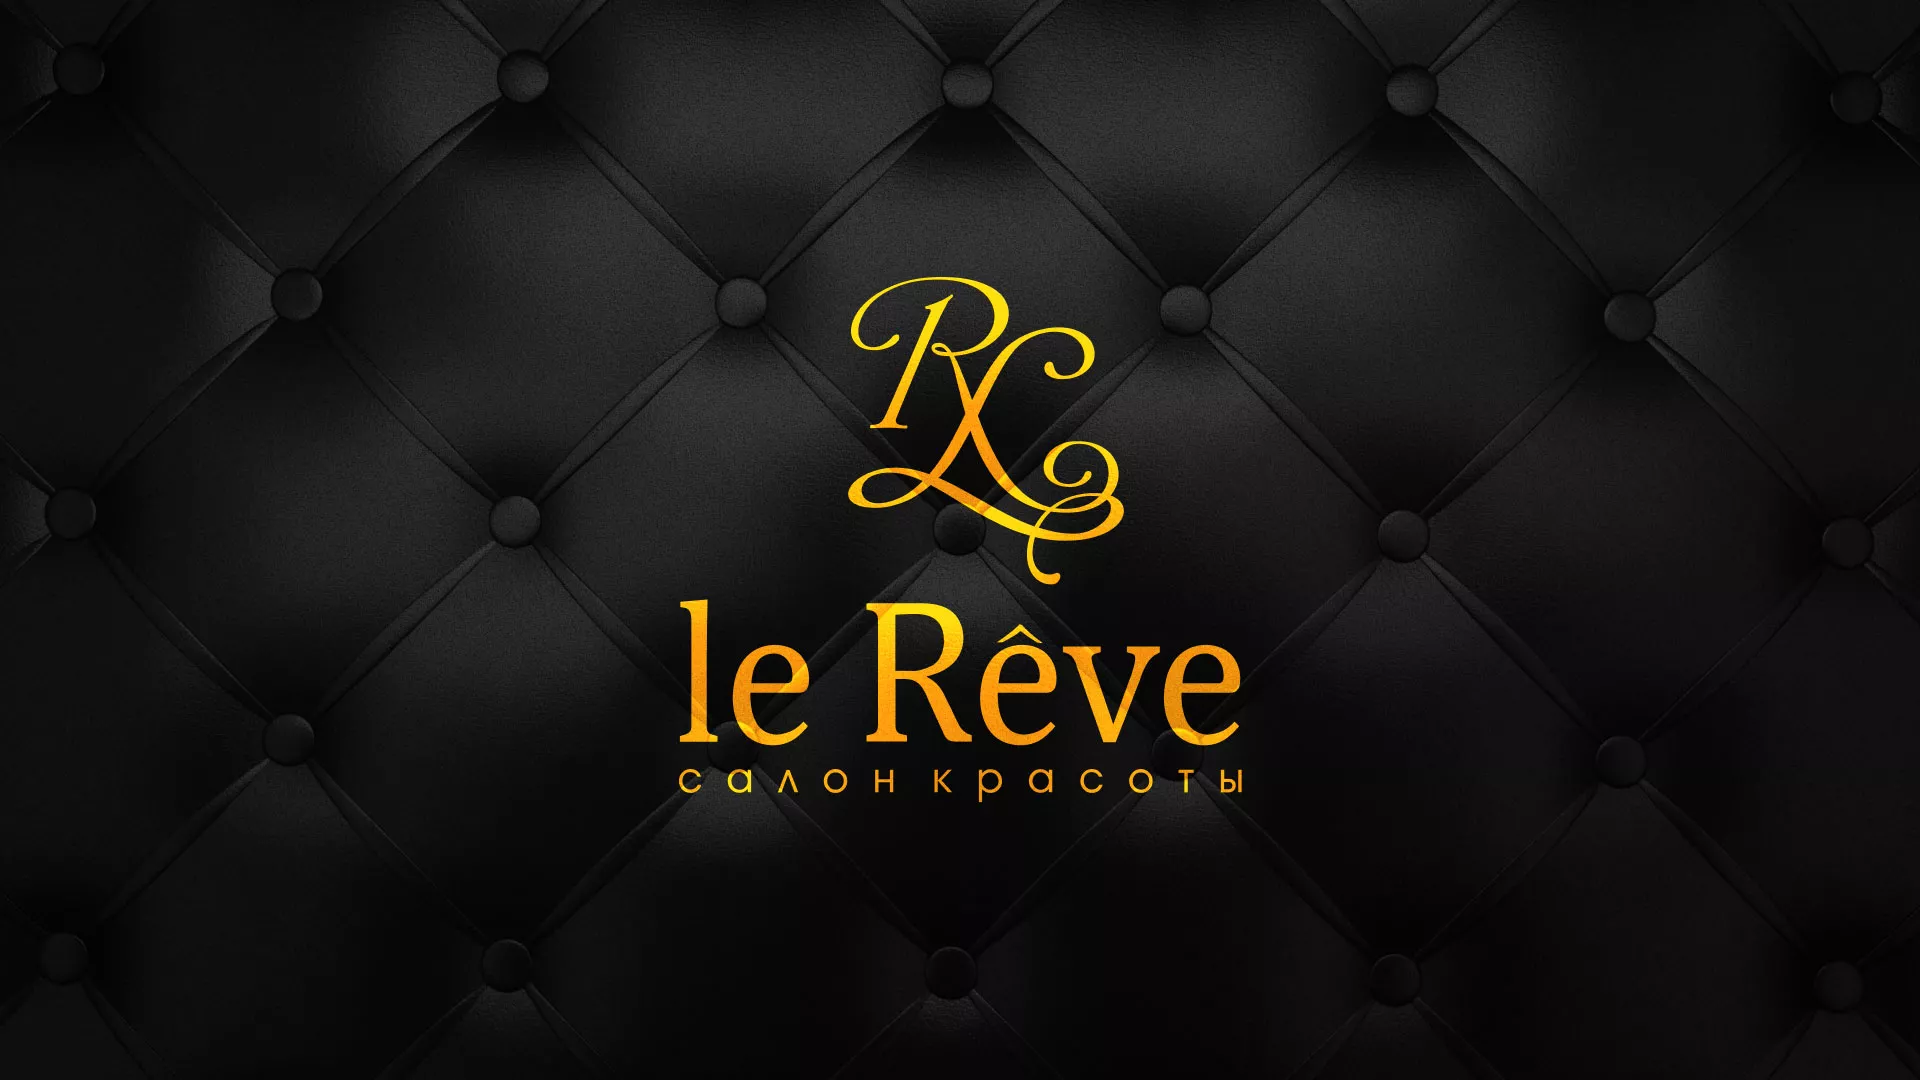 Разработка листовок для салона красоты «Le Reve» в Асино